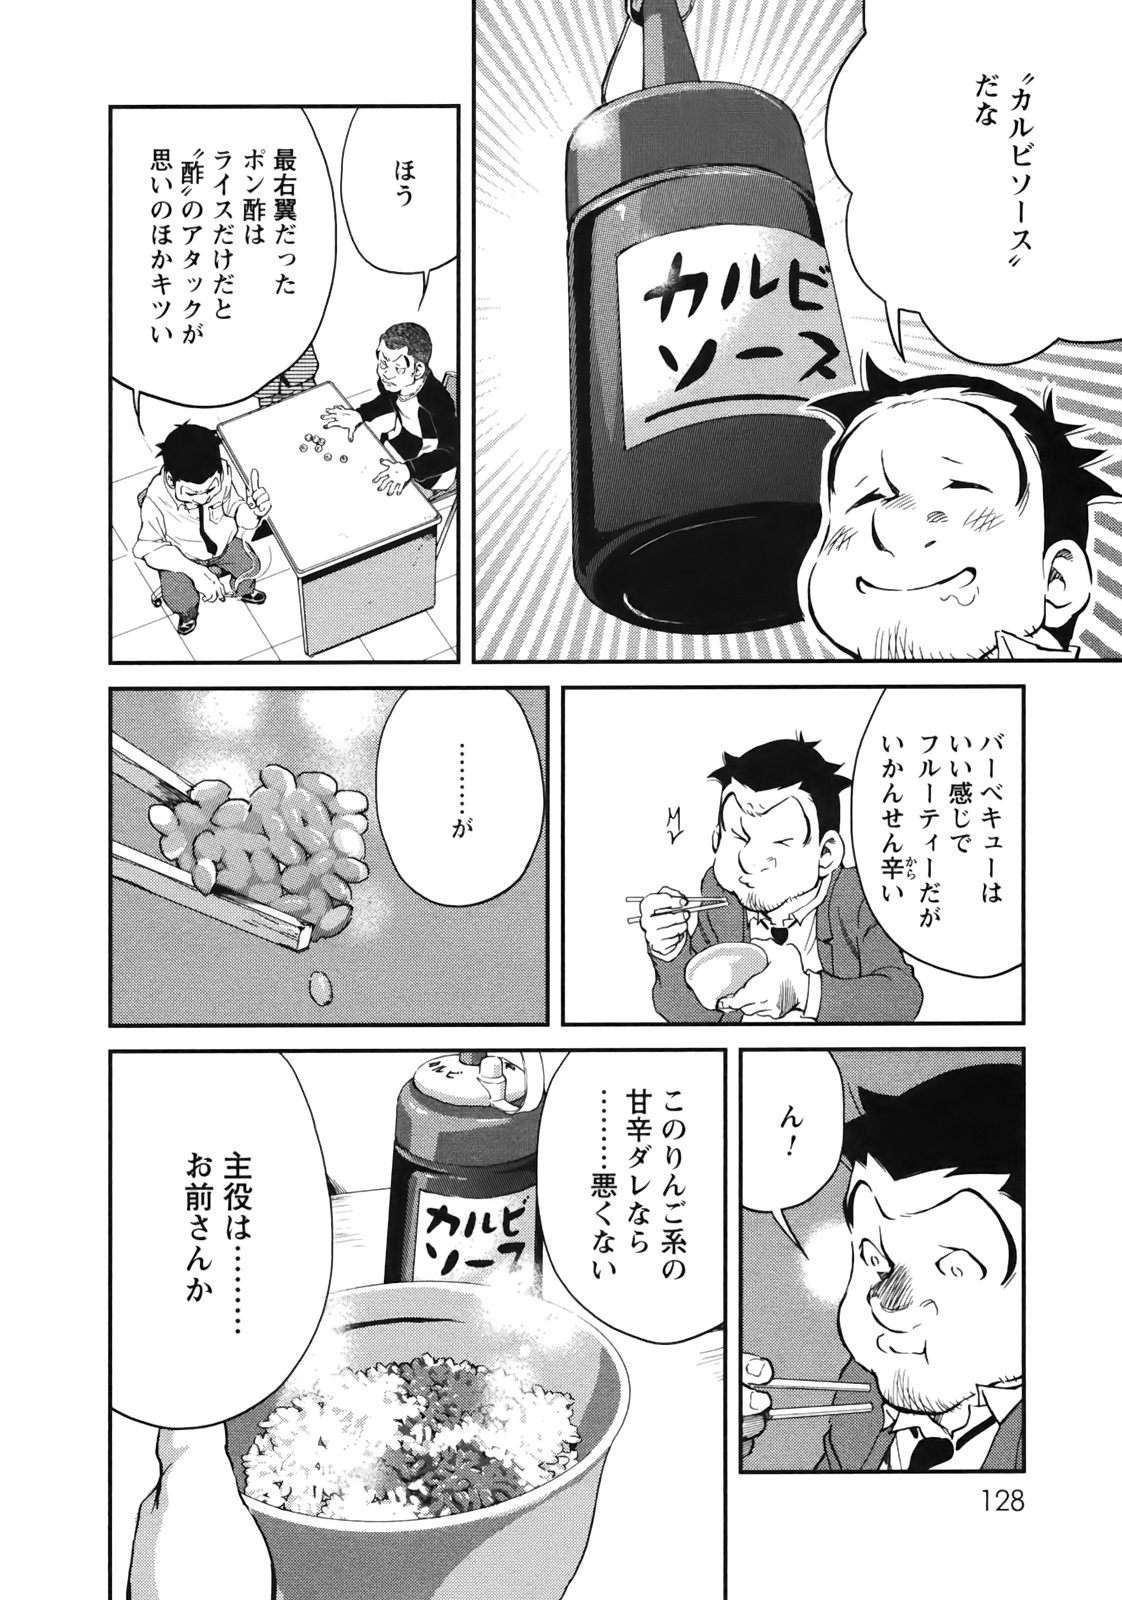 【絶望】松屋、ついに味噌汁無料サービス廃止へ \n_3